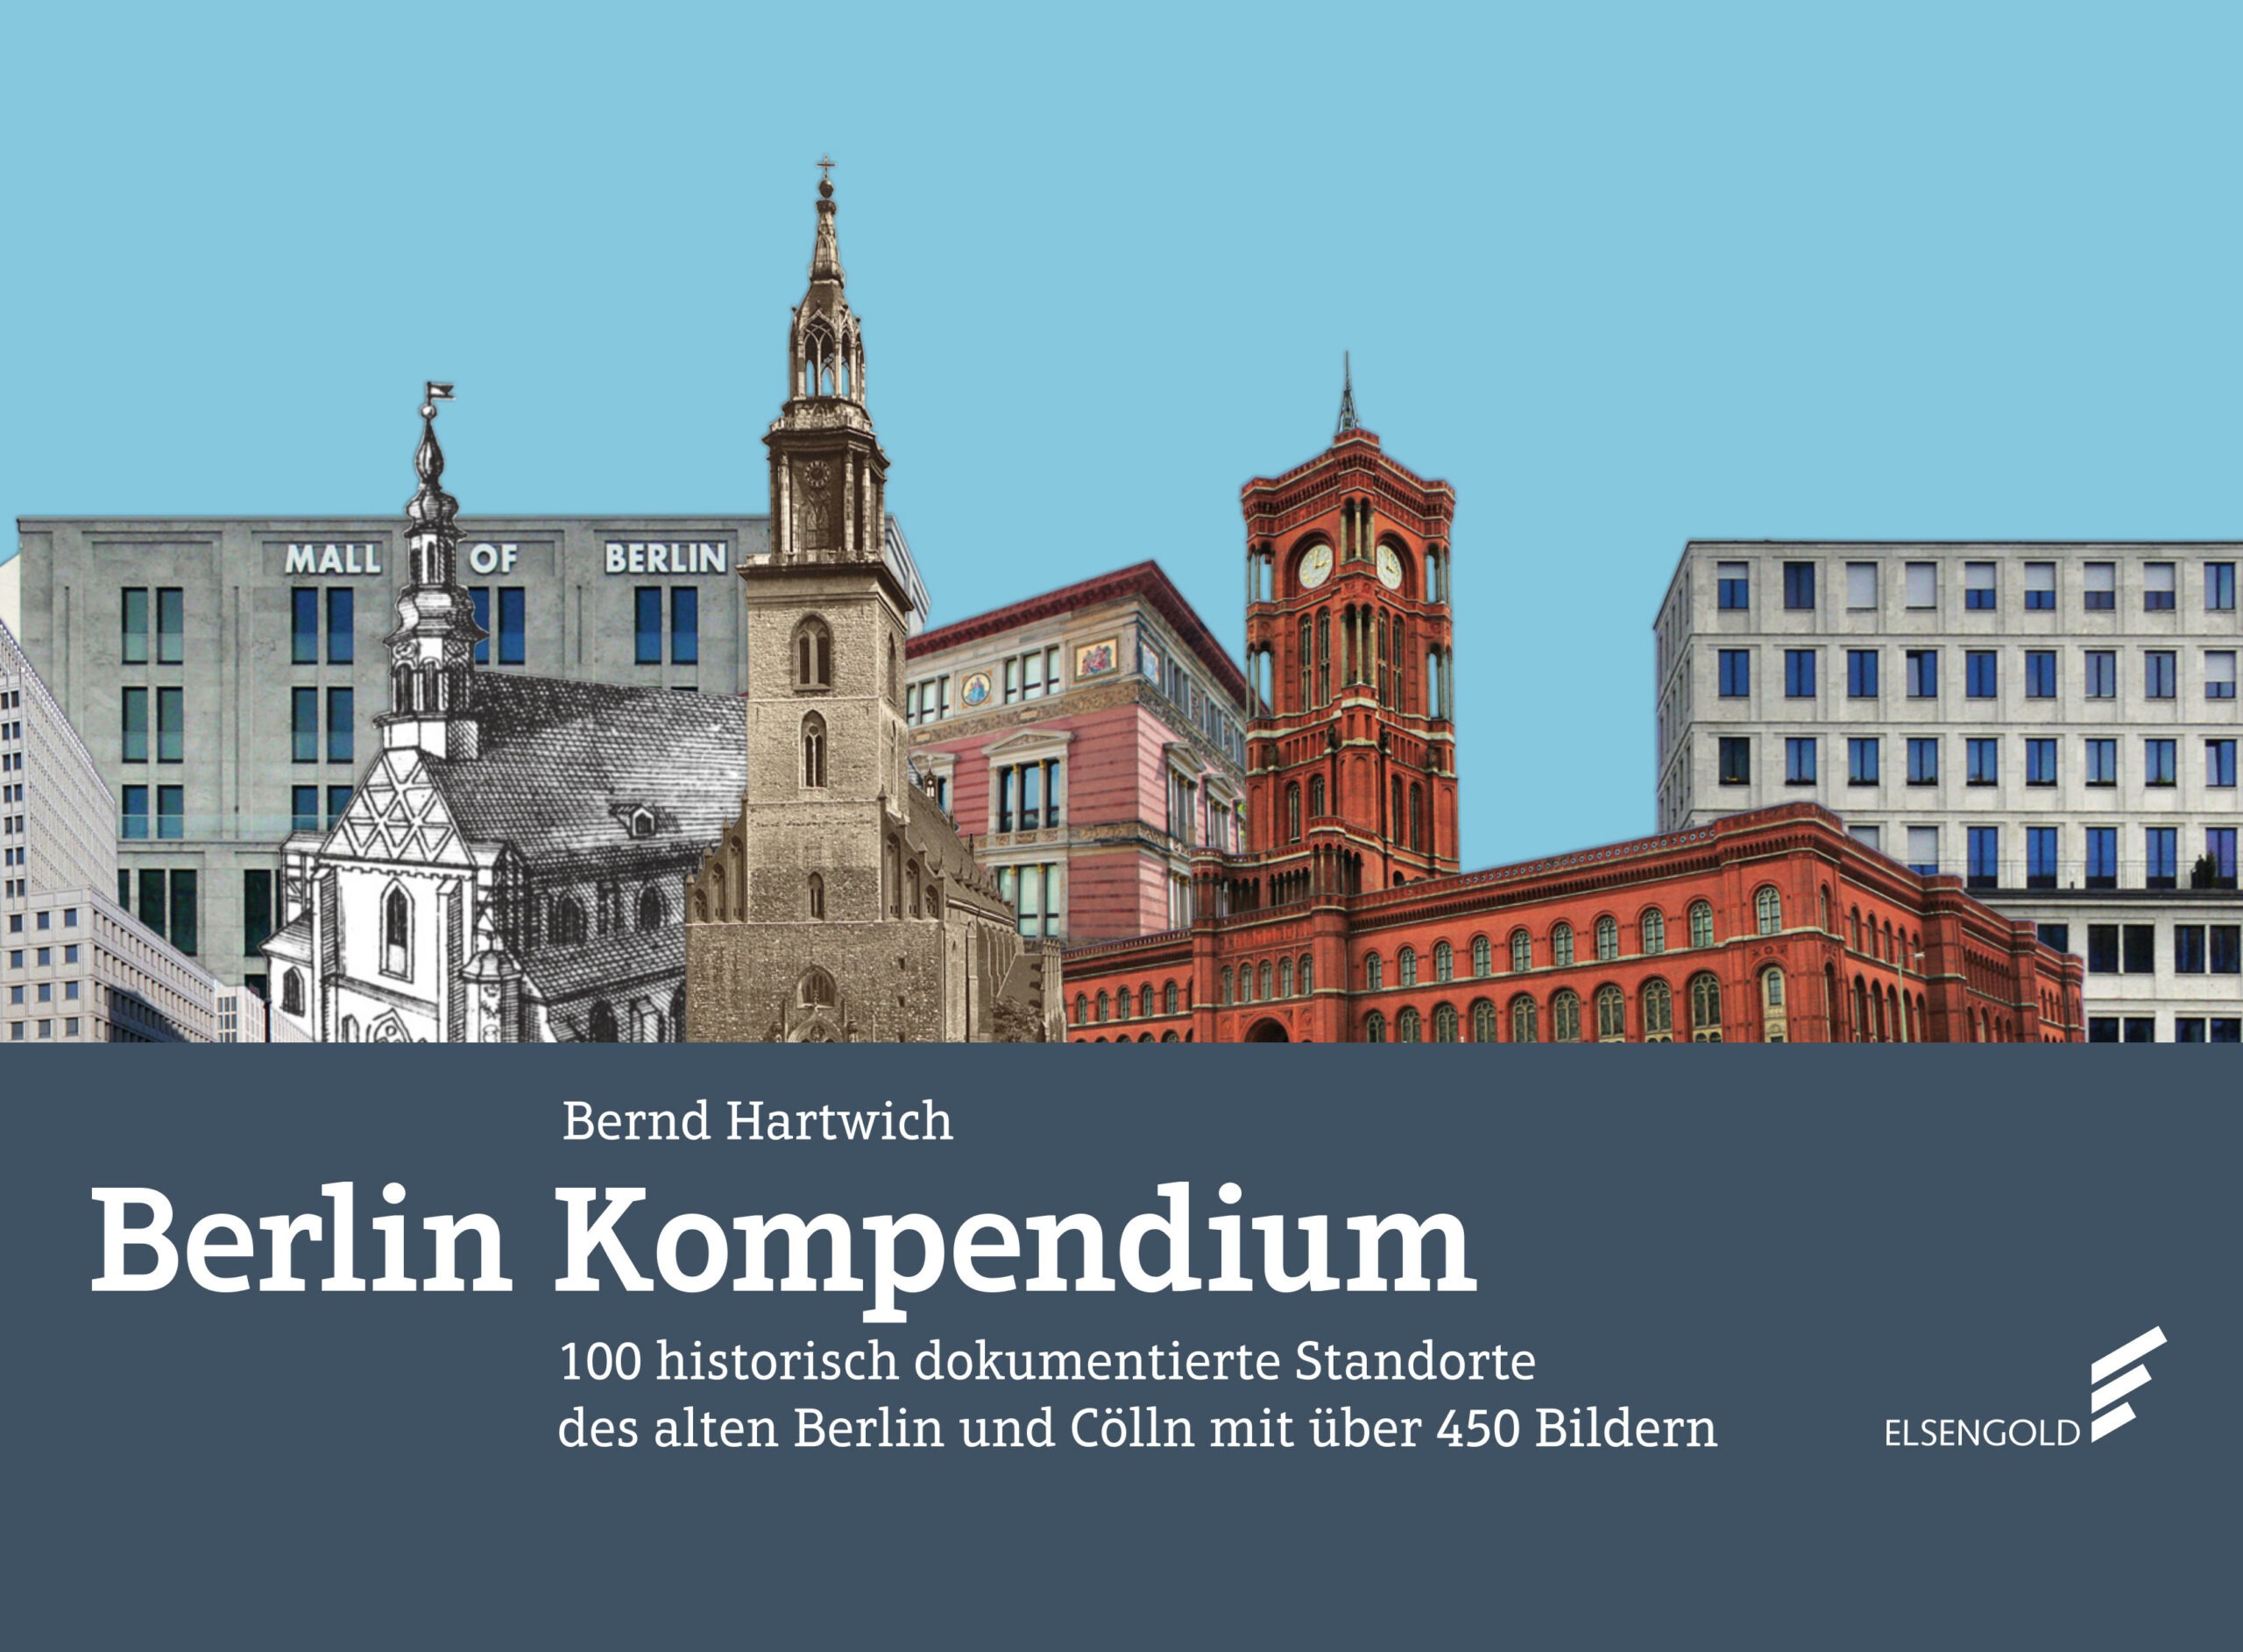 Das ist das Cover von "Berlin-Kompendium